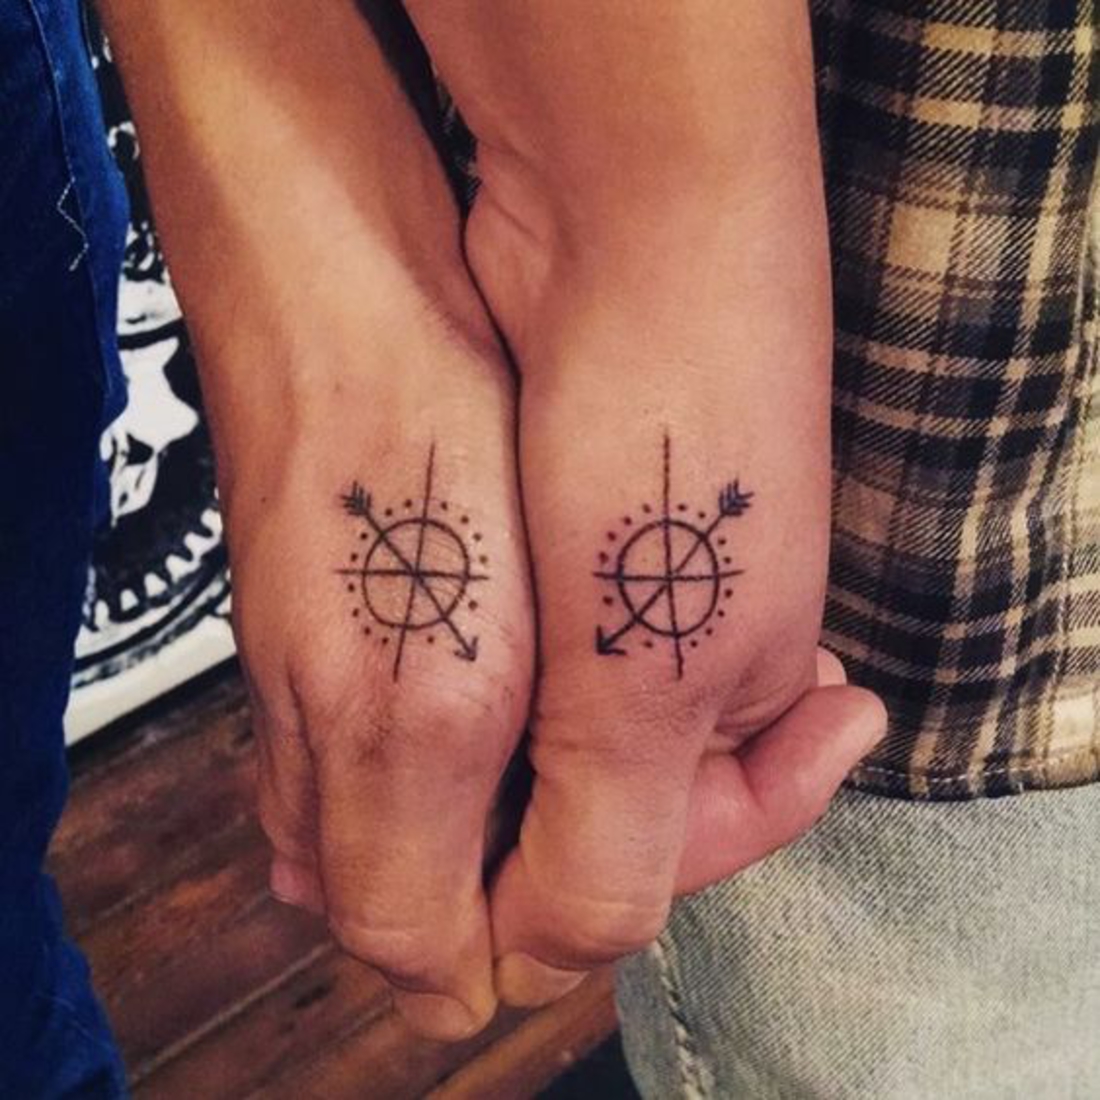 tatuajes en pareja, tatuajes románticos en las manos, brújula, flecha, interesante